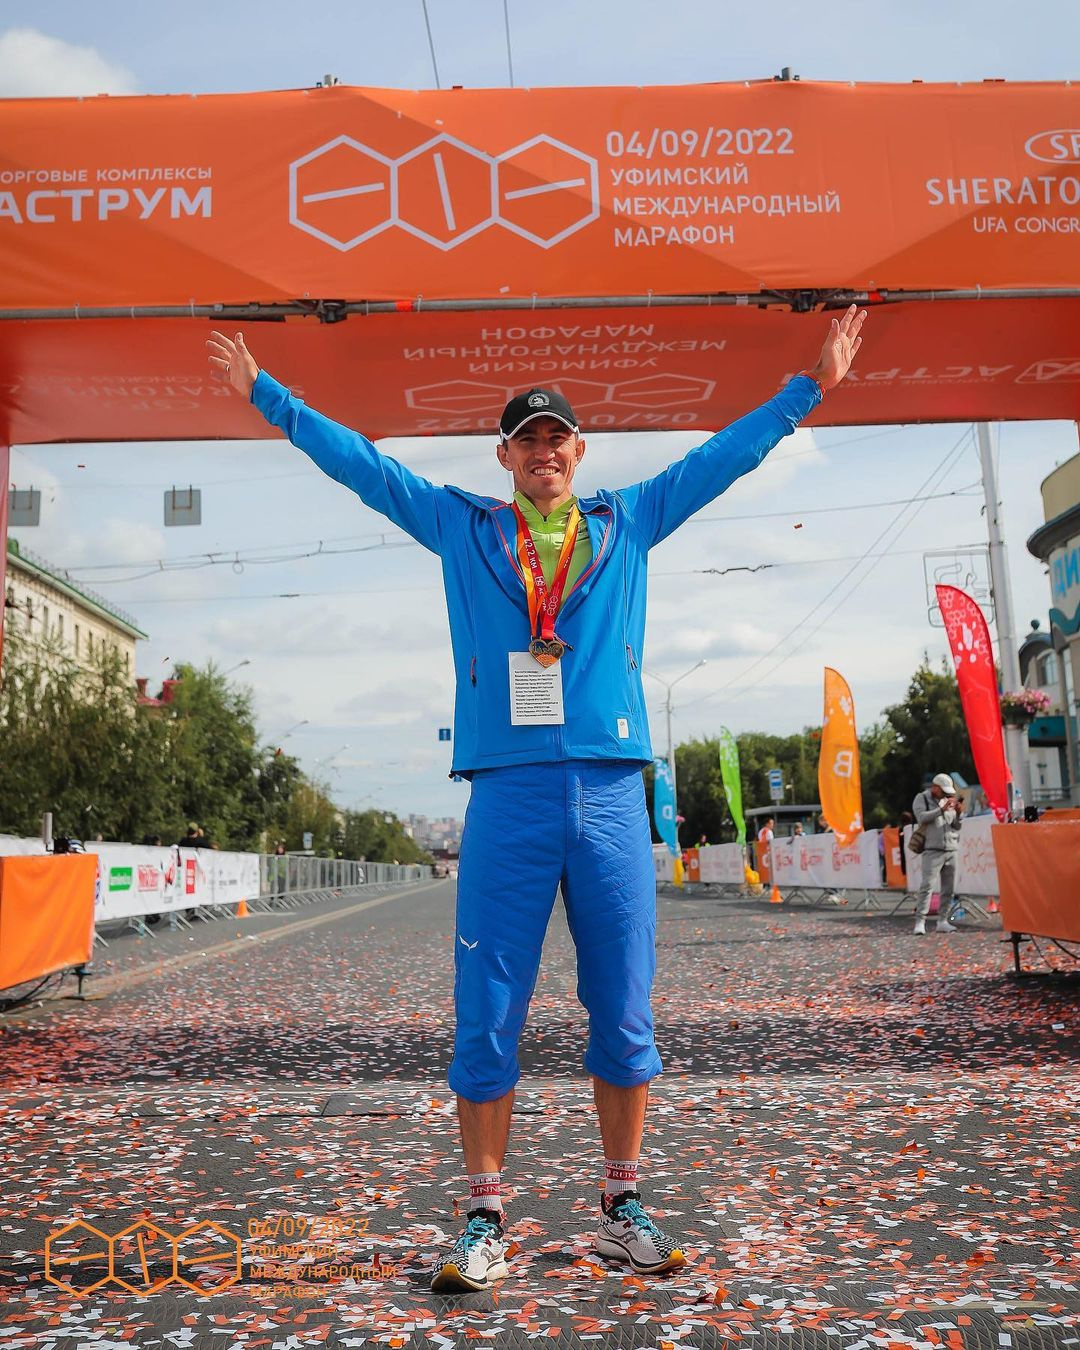 Владислав также принимал участие в марафонах в разных странах 